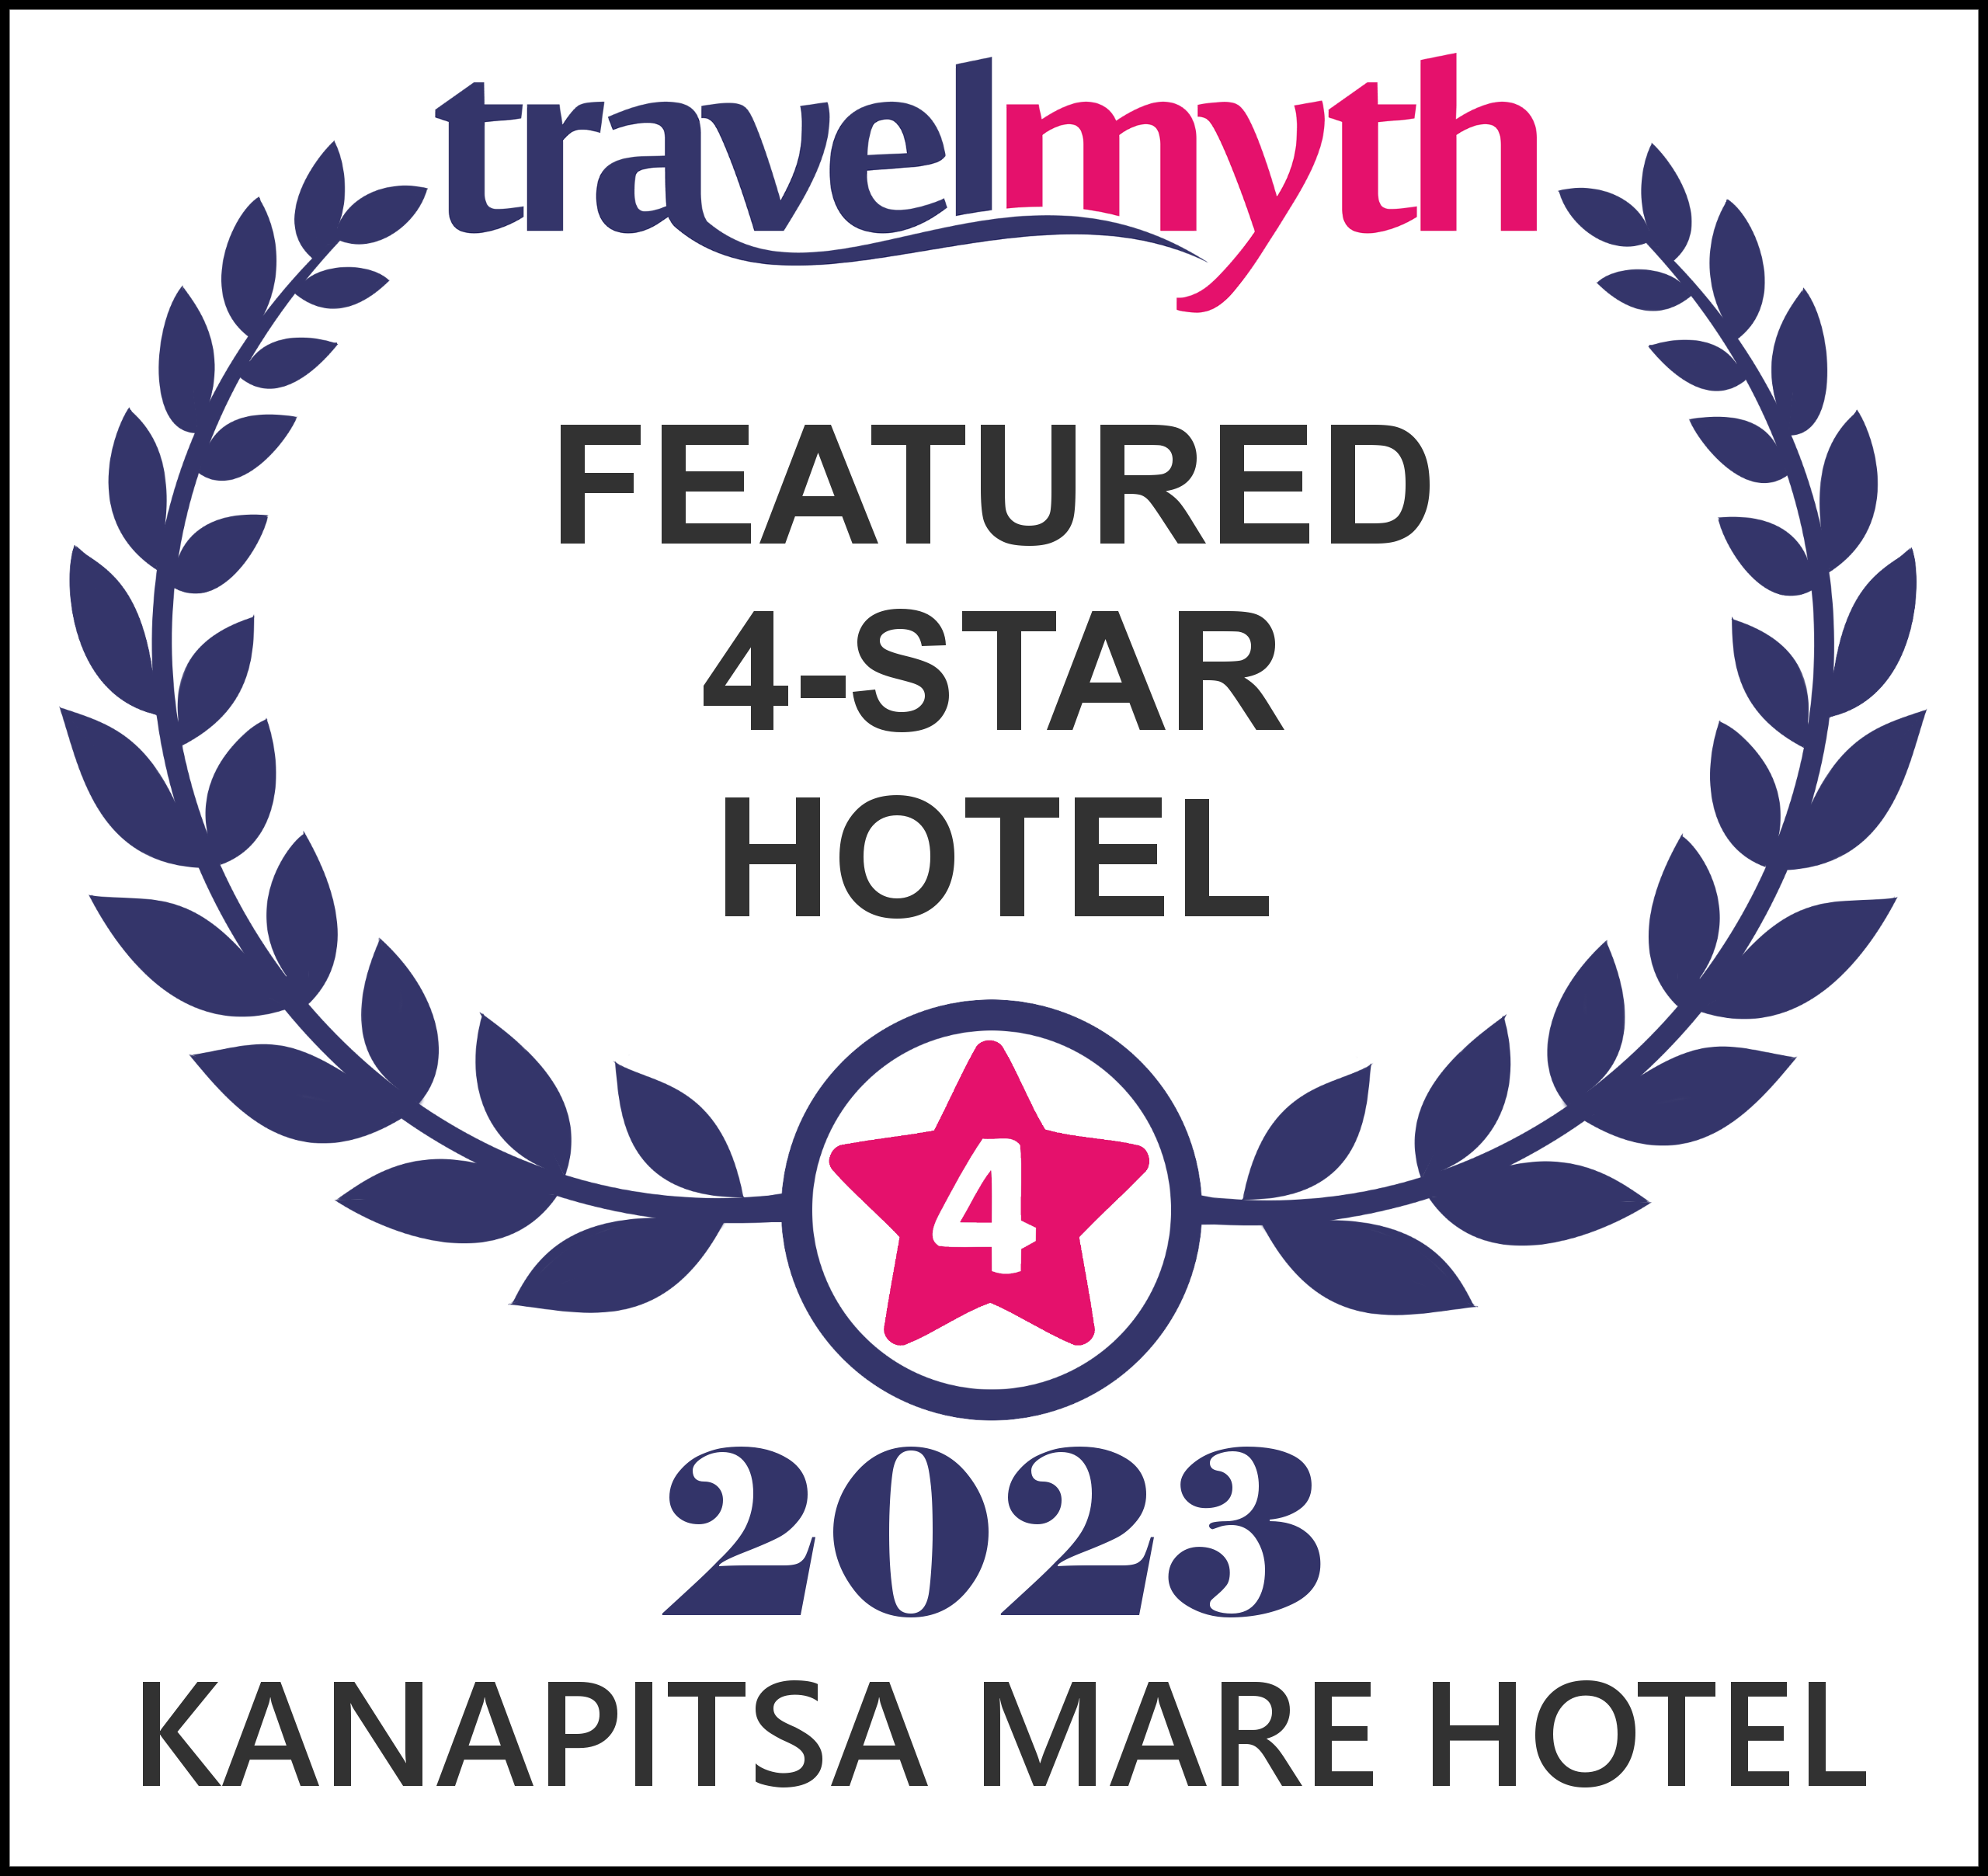 Skiathos Hotel Travel Myth award